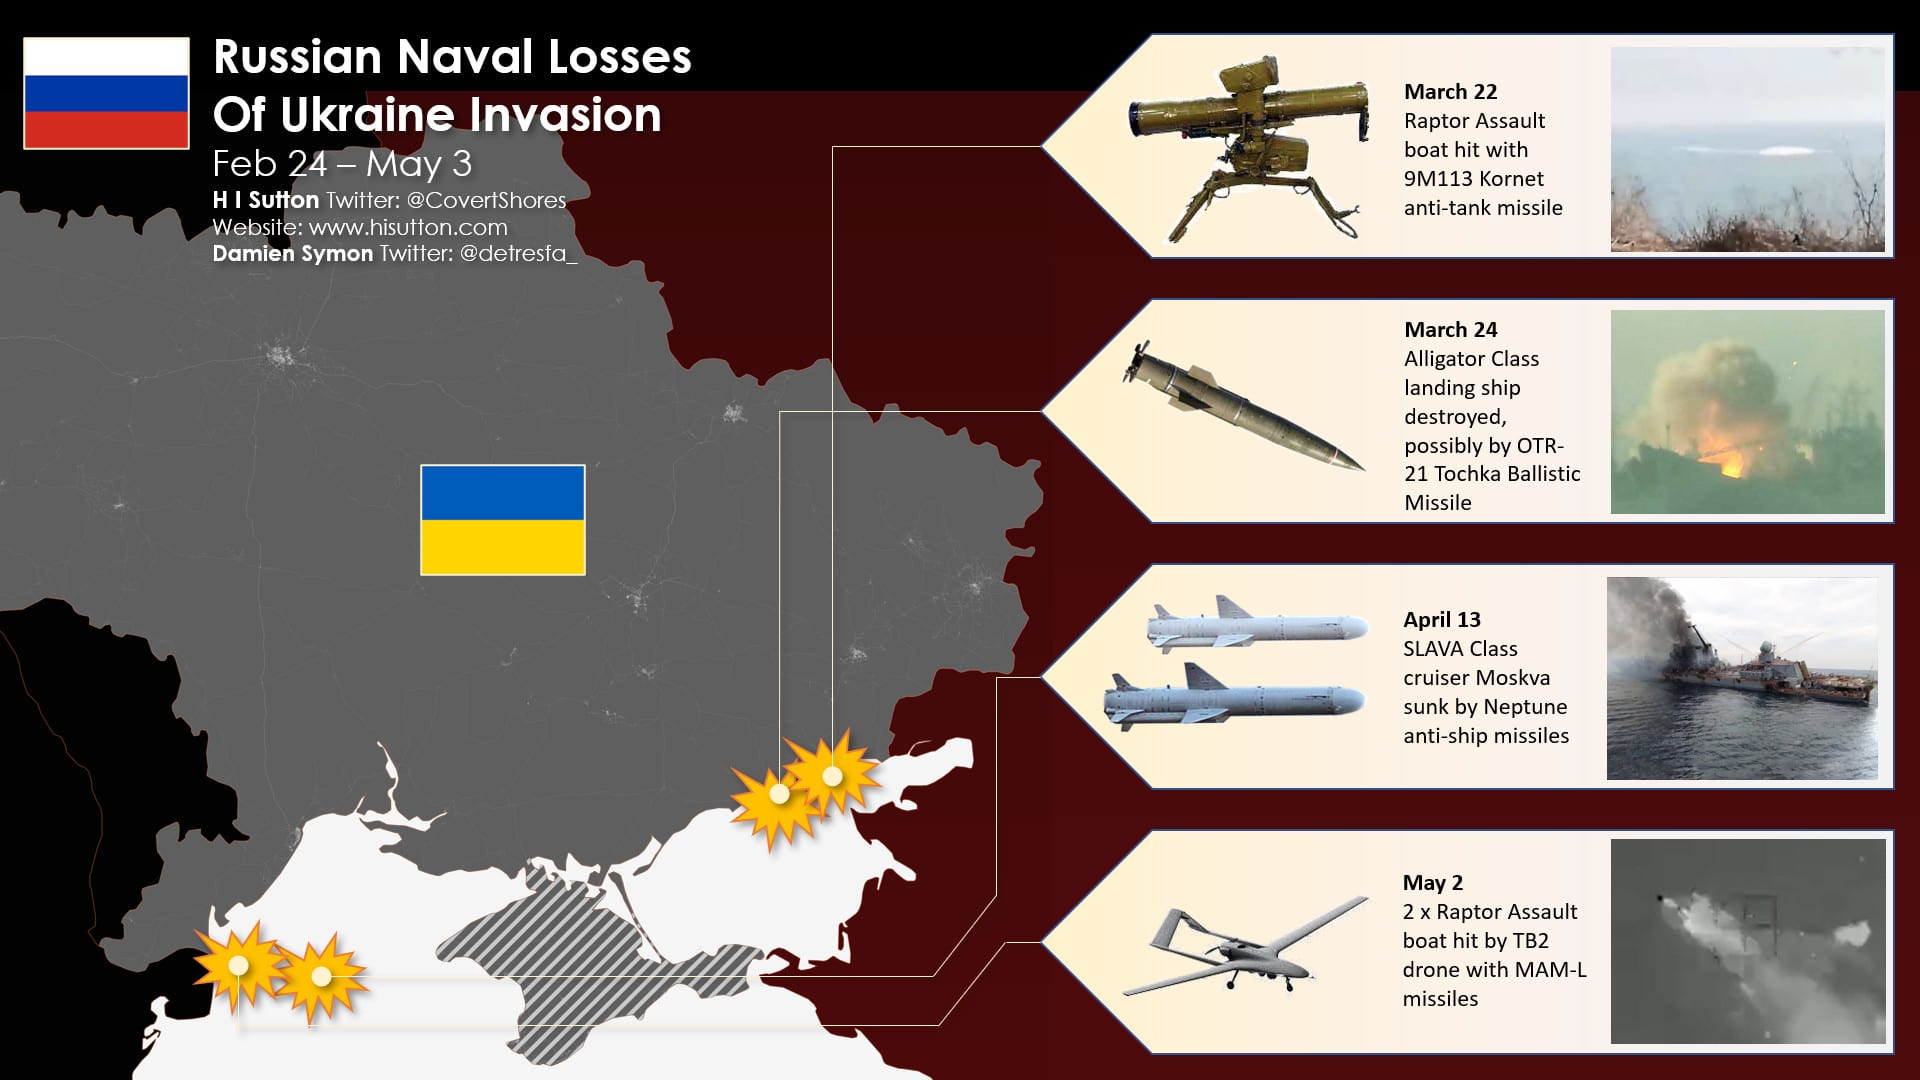 5 perdas significativas da Marinha Russa na Guerra da Ucrânia até agora